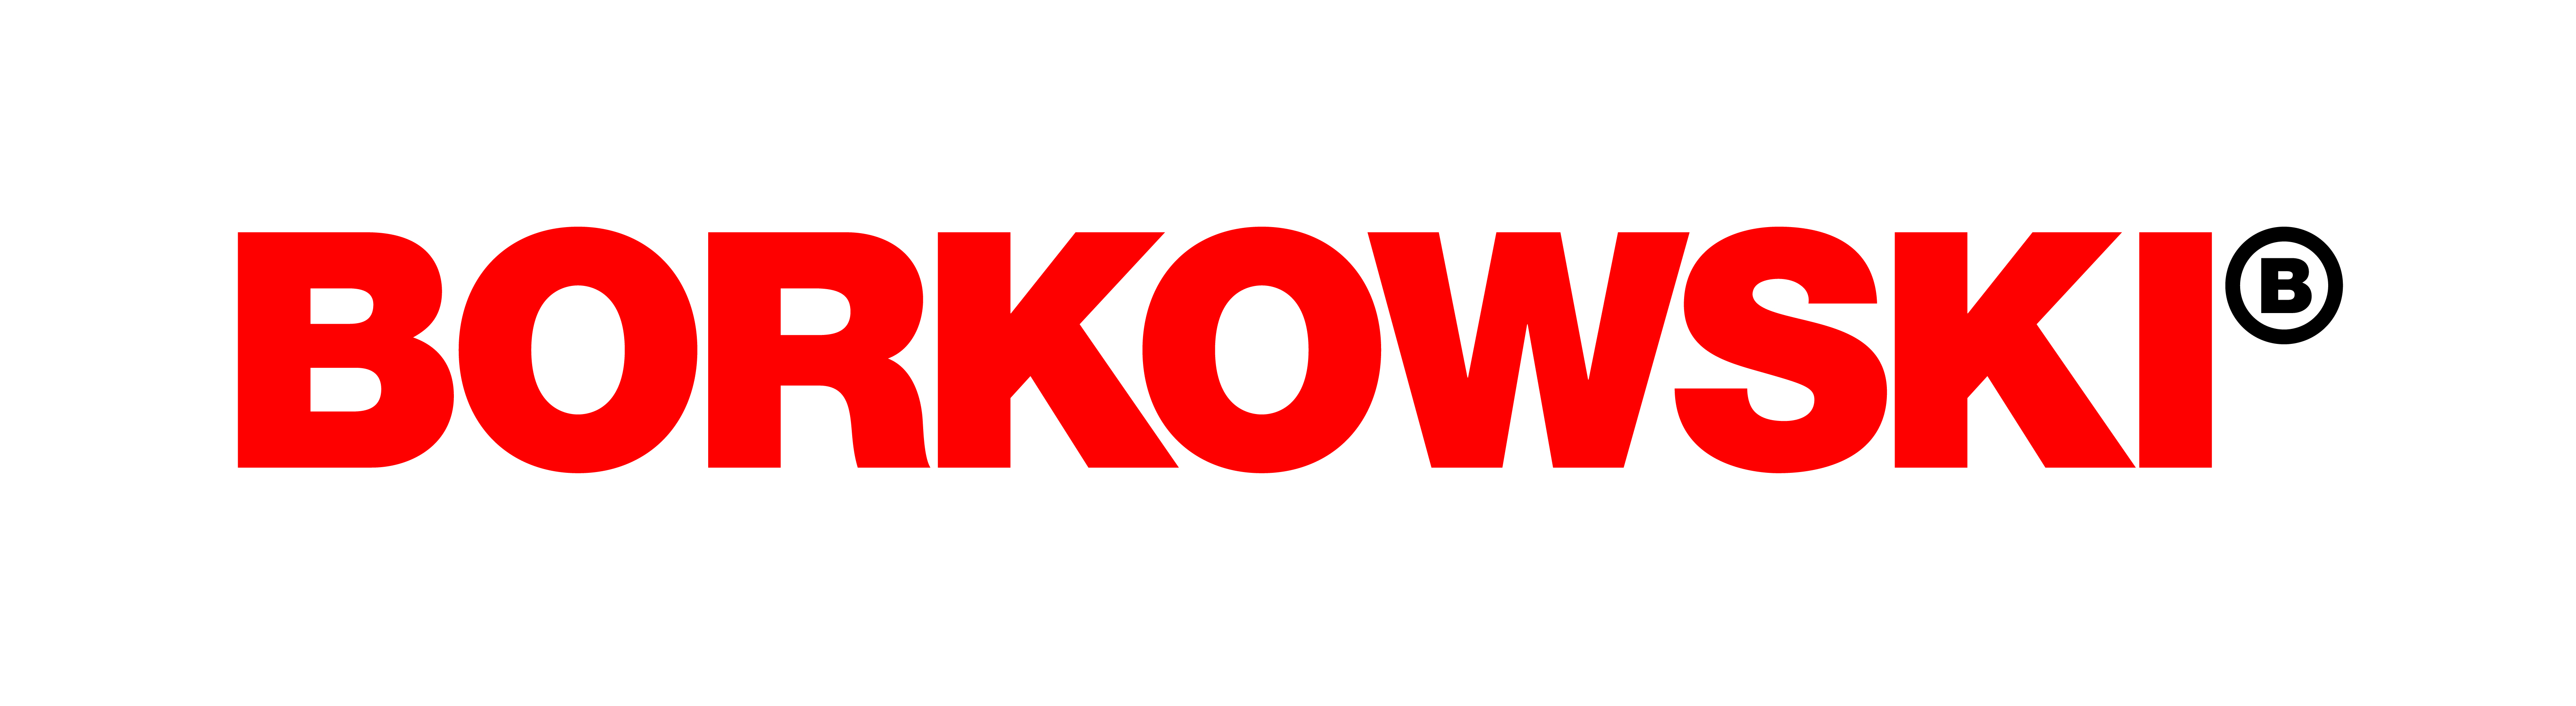 borkowski-logo